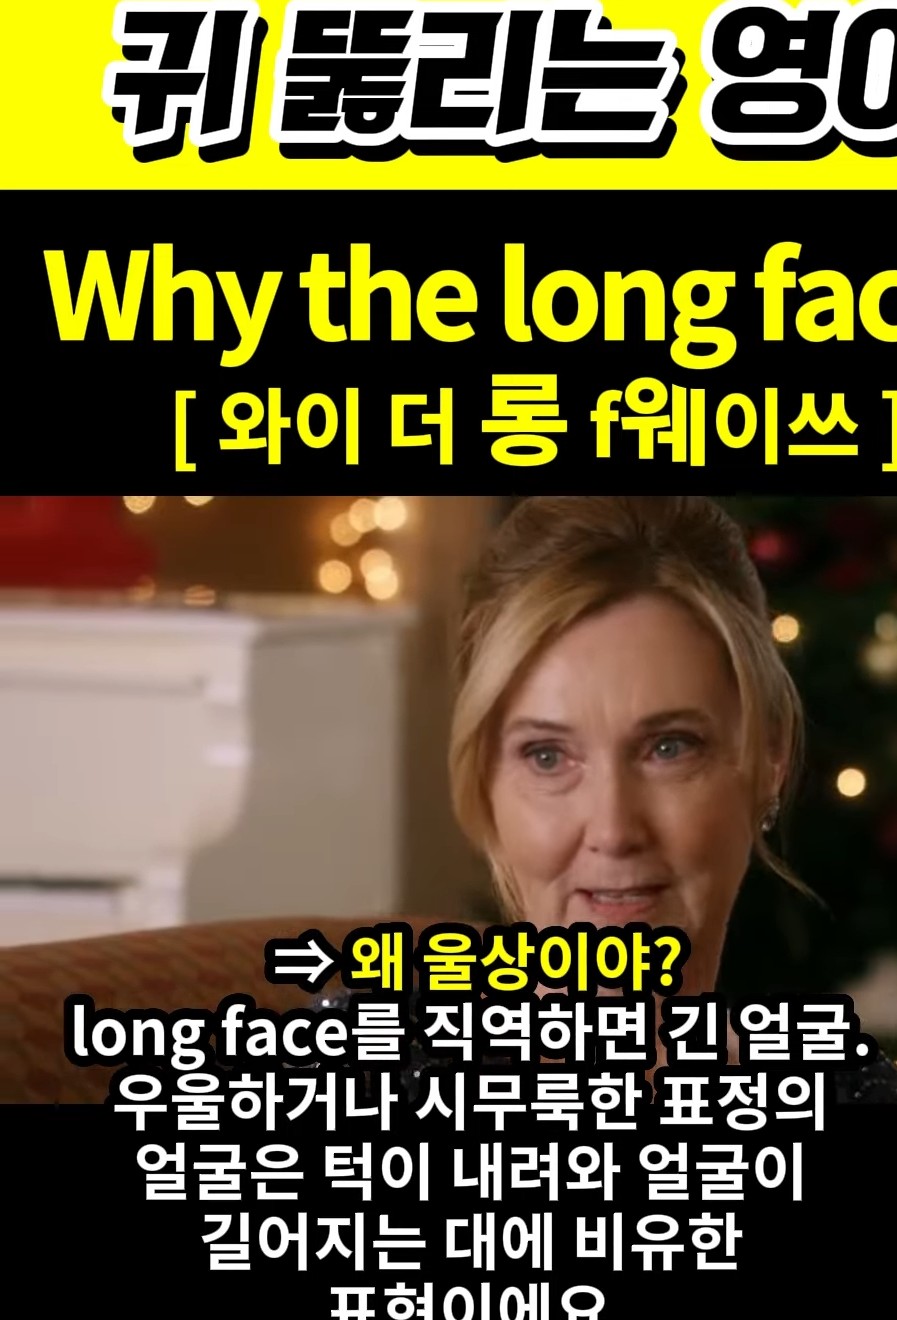 과천 할매와 귀 뚫리는 영어  왜 울상이야 [와이 더 롱 f웨이쓰] Why the long face?